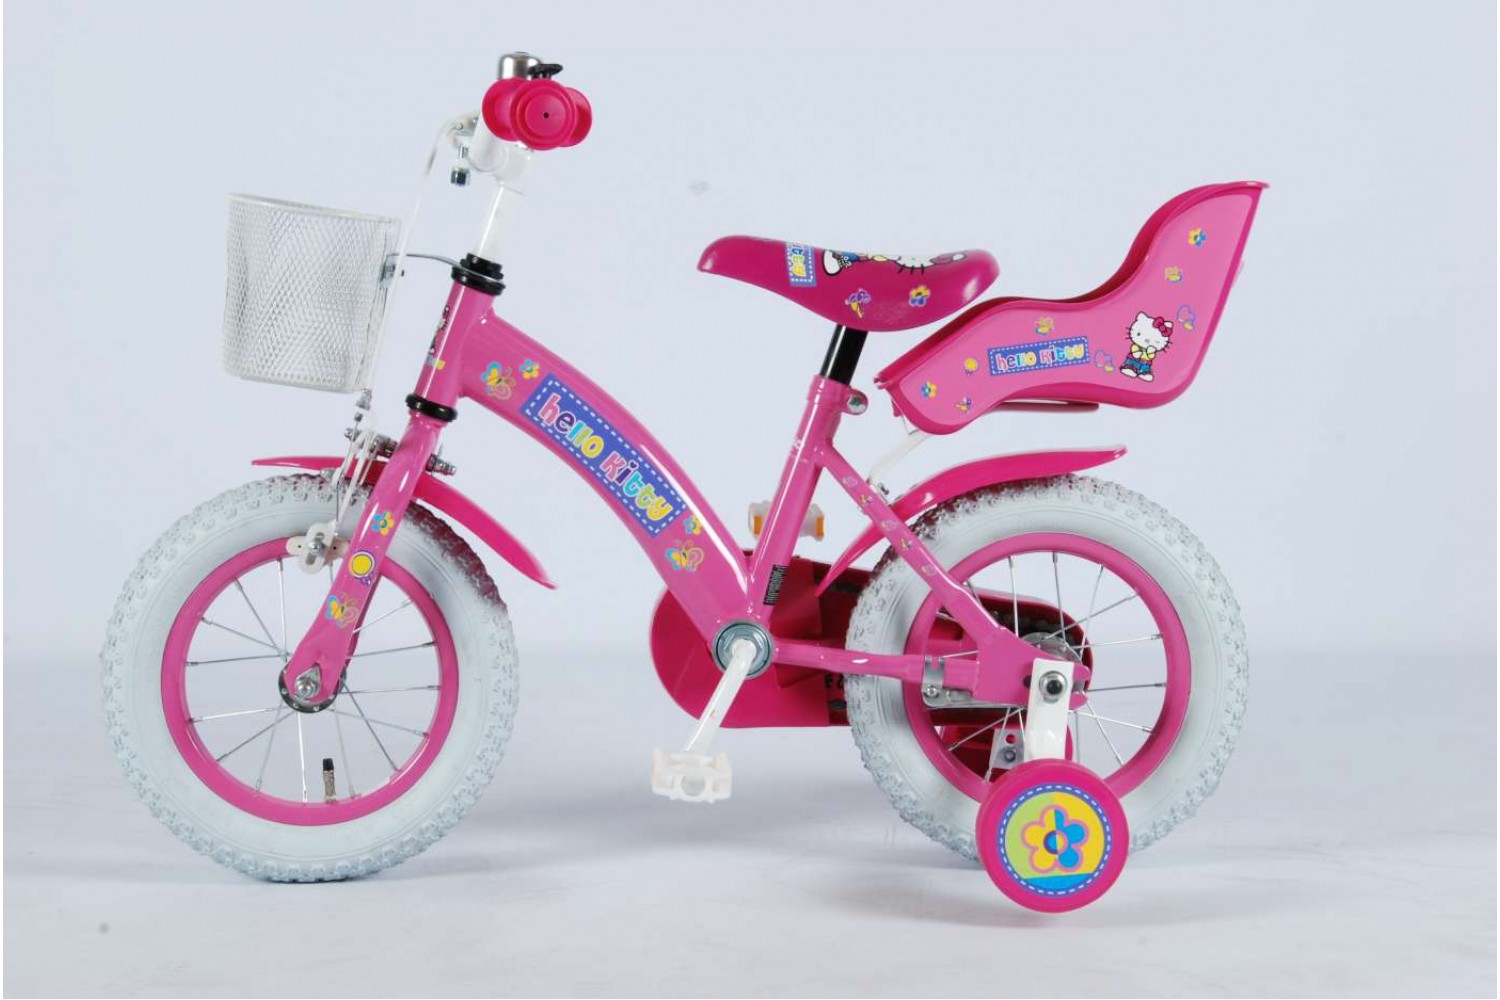 Vergissing Kinderpaleis Uitlijnen Hello Kitty Jeans Roze 12 inch | Meisjesfiets - City-Bikes.nl